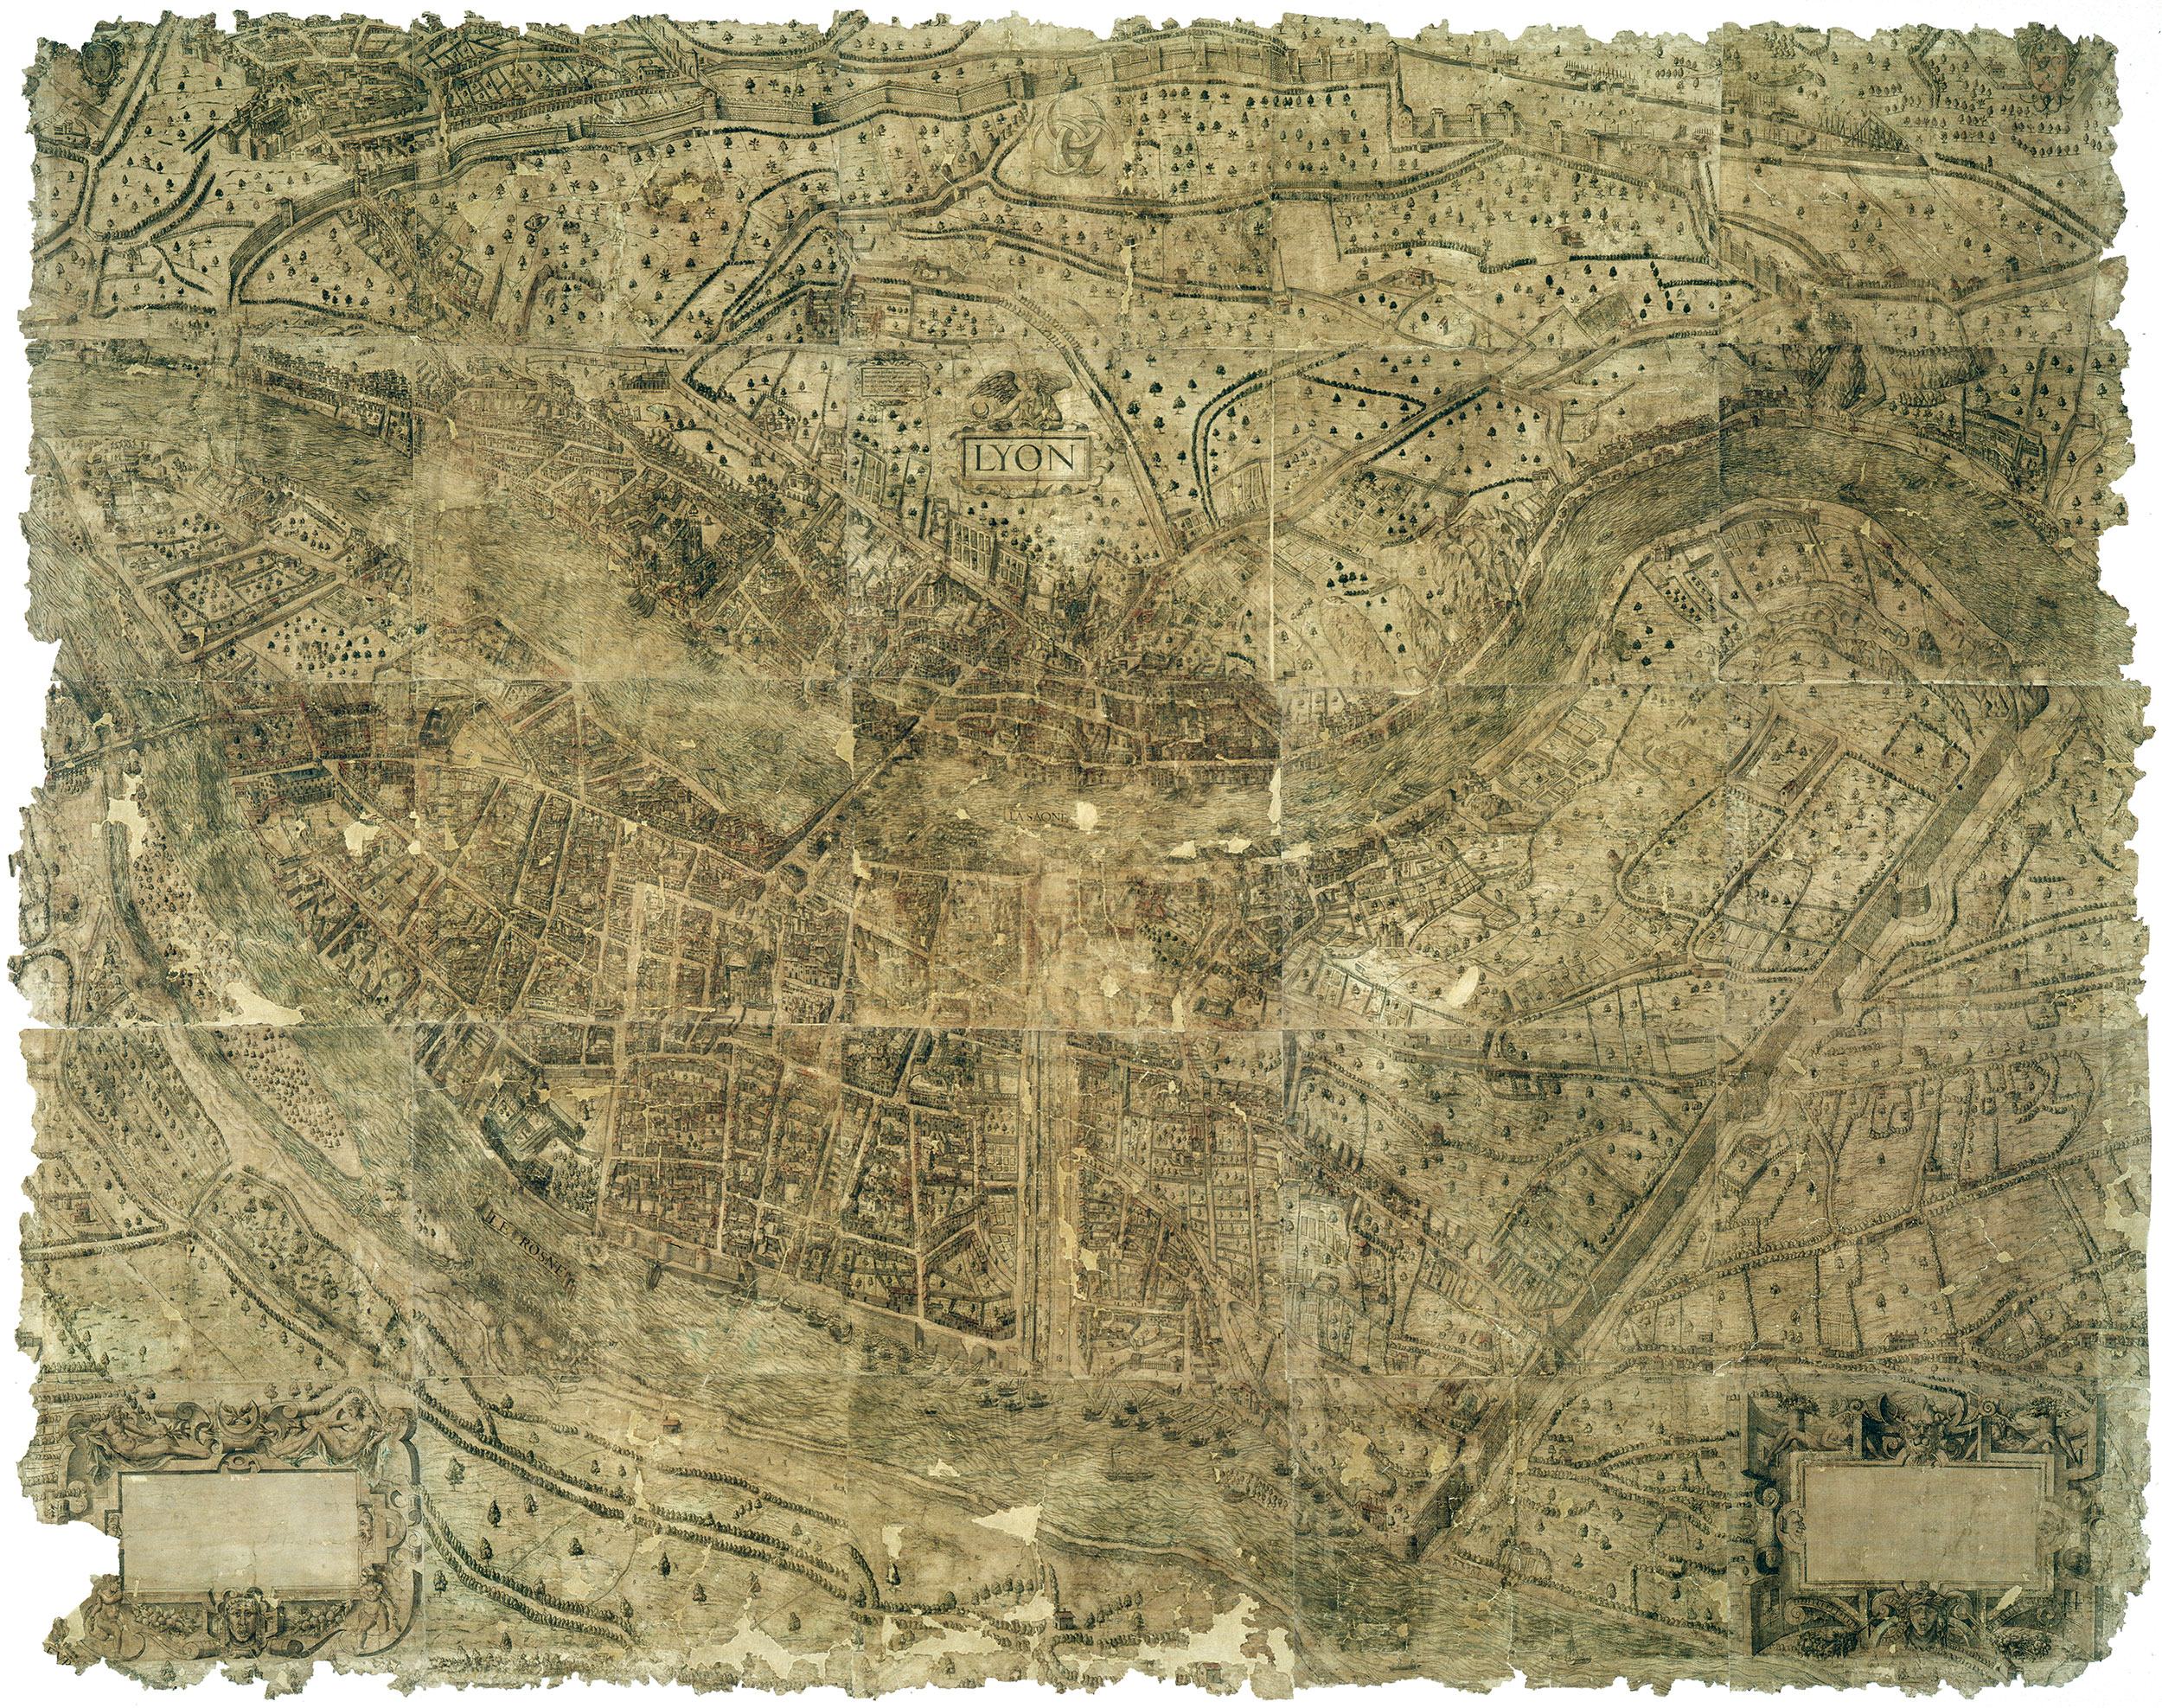 Plan scenographique de Lyon en 1550 - 2SAT/3